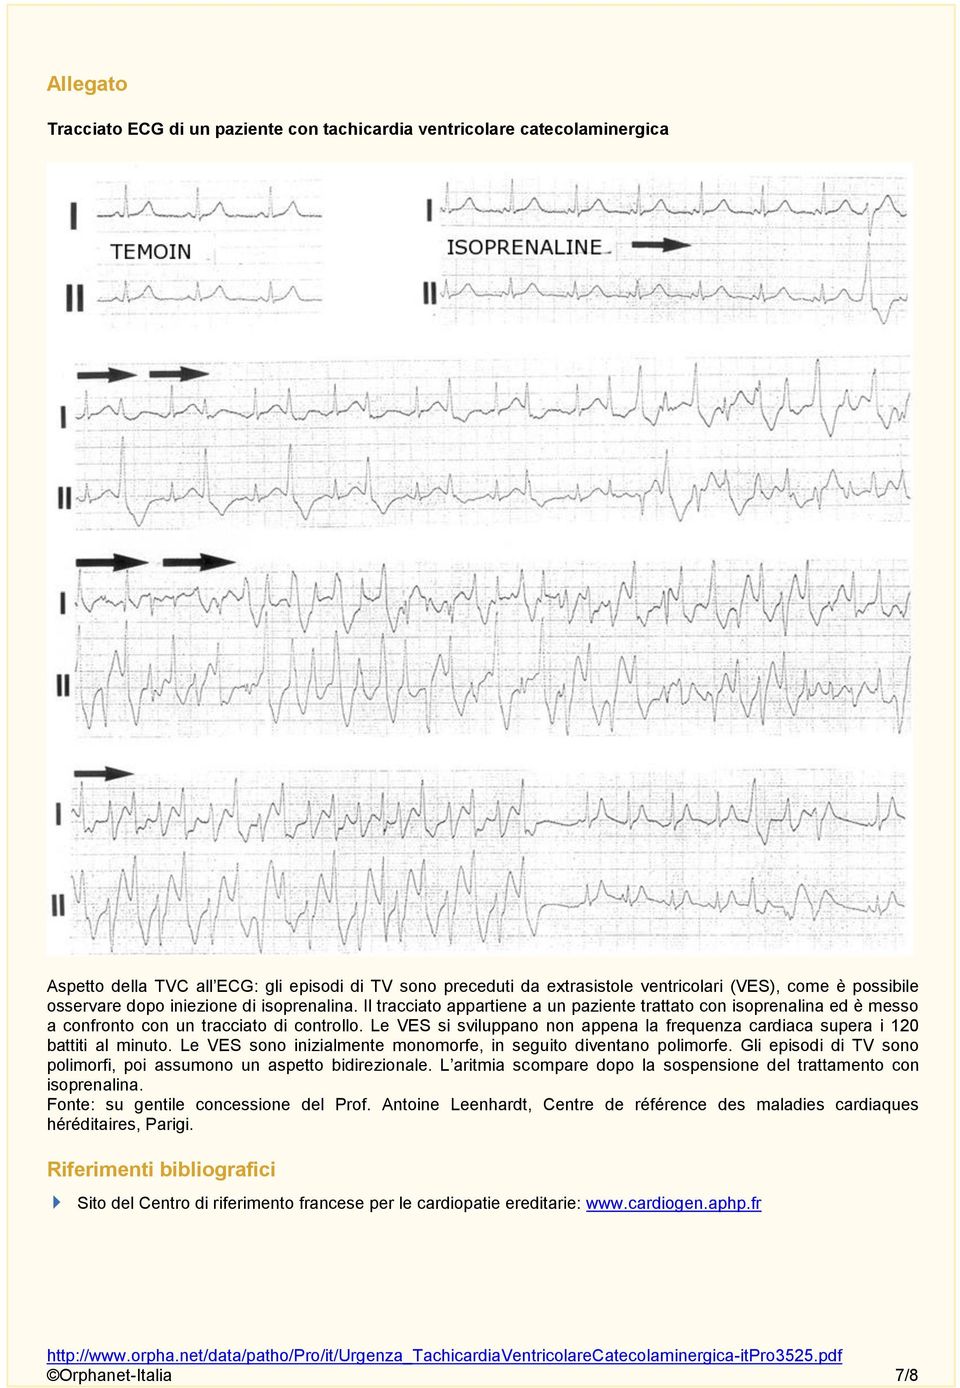 Le VES si sviluppano non appena la frequenza cardiaca supera i 120 battiti al minuto. Le VES sono inizialmente monomorfe, in seguito diventano polimorfe.